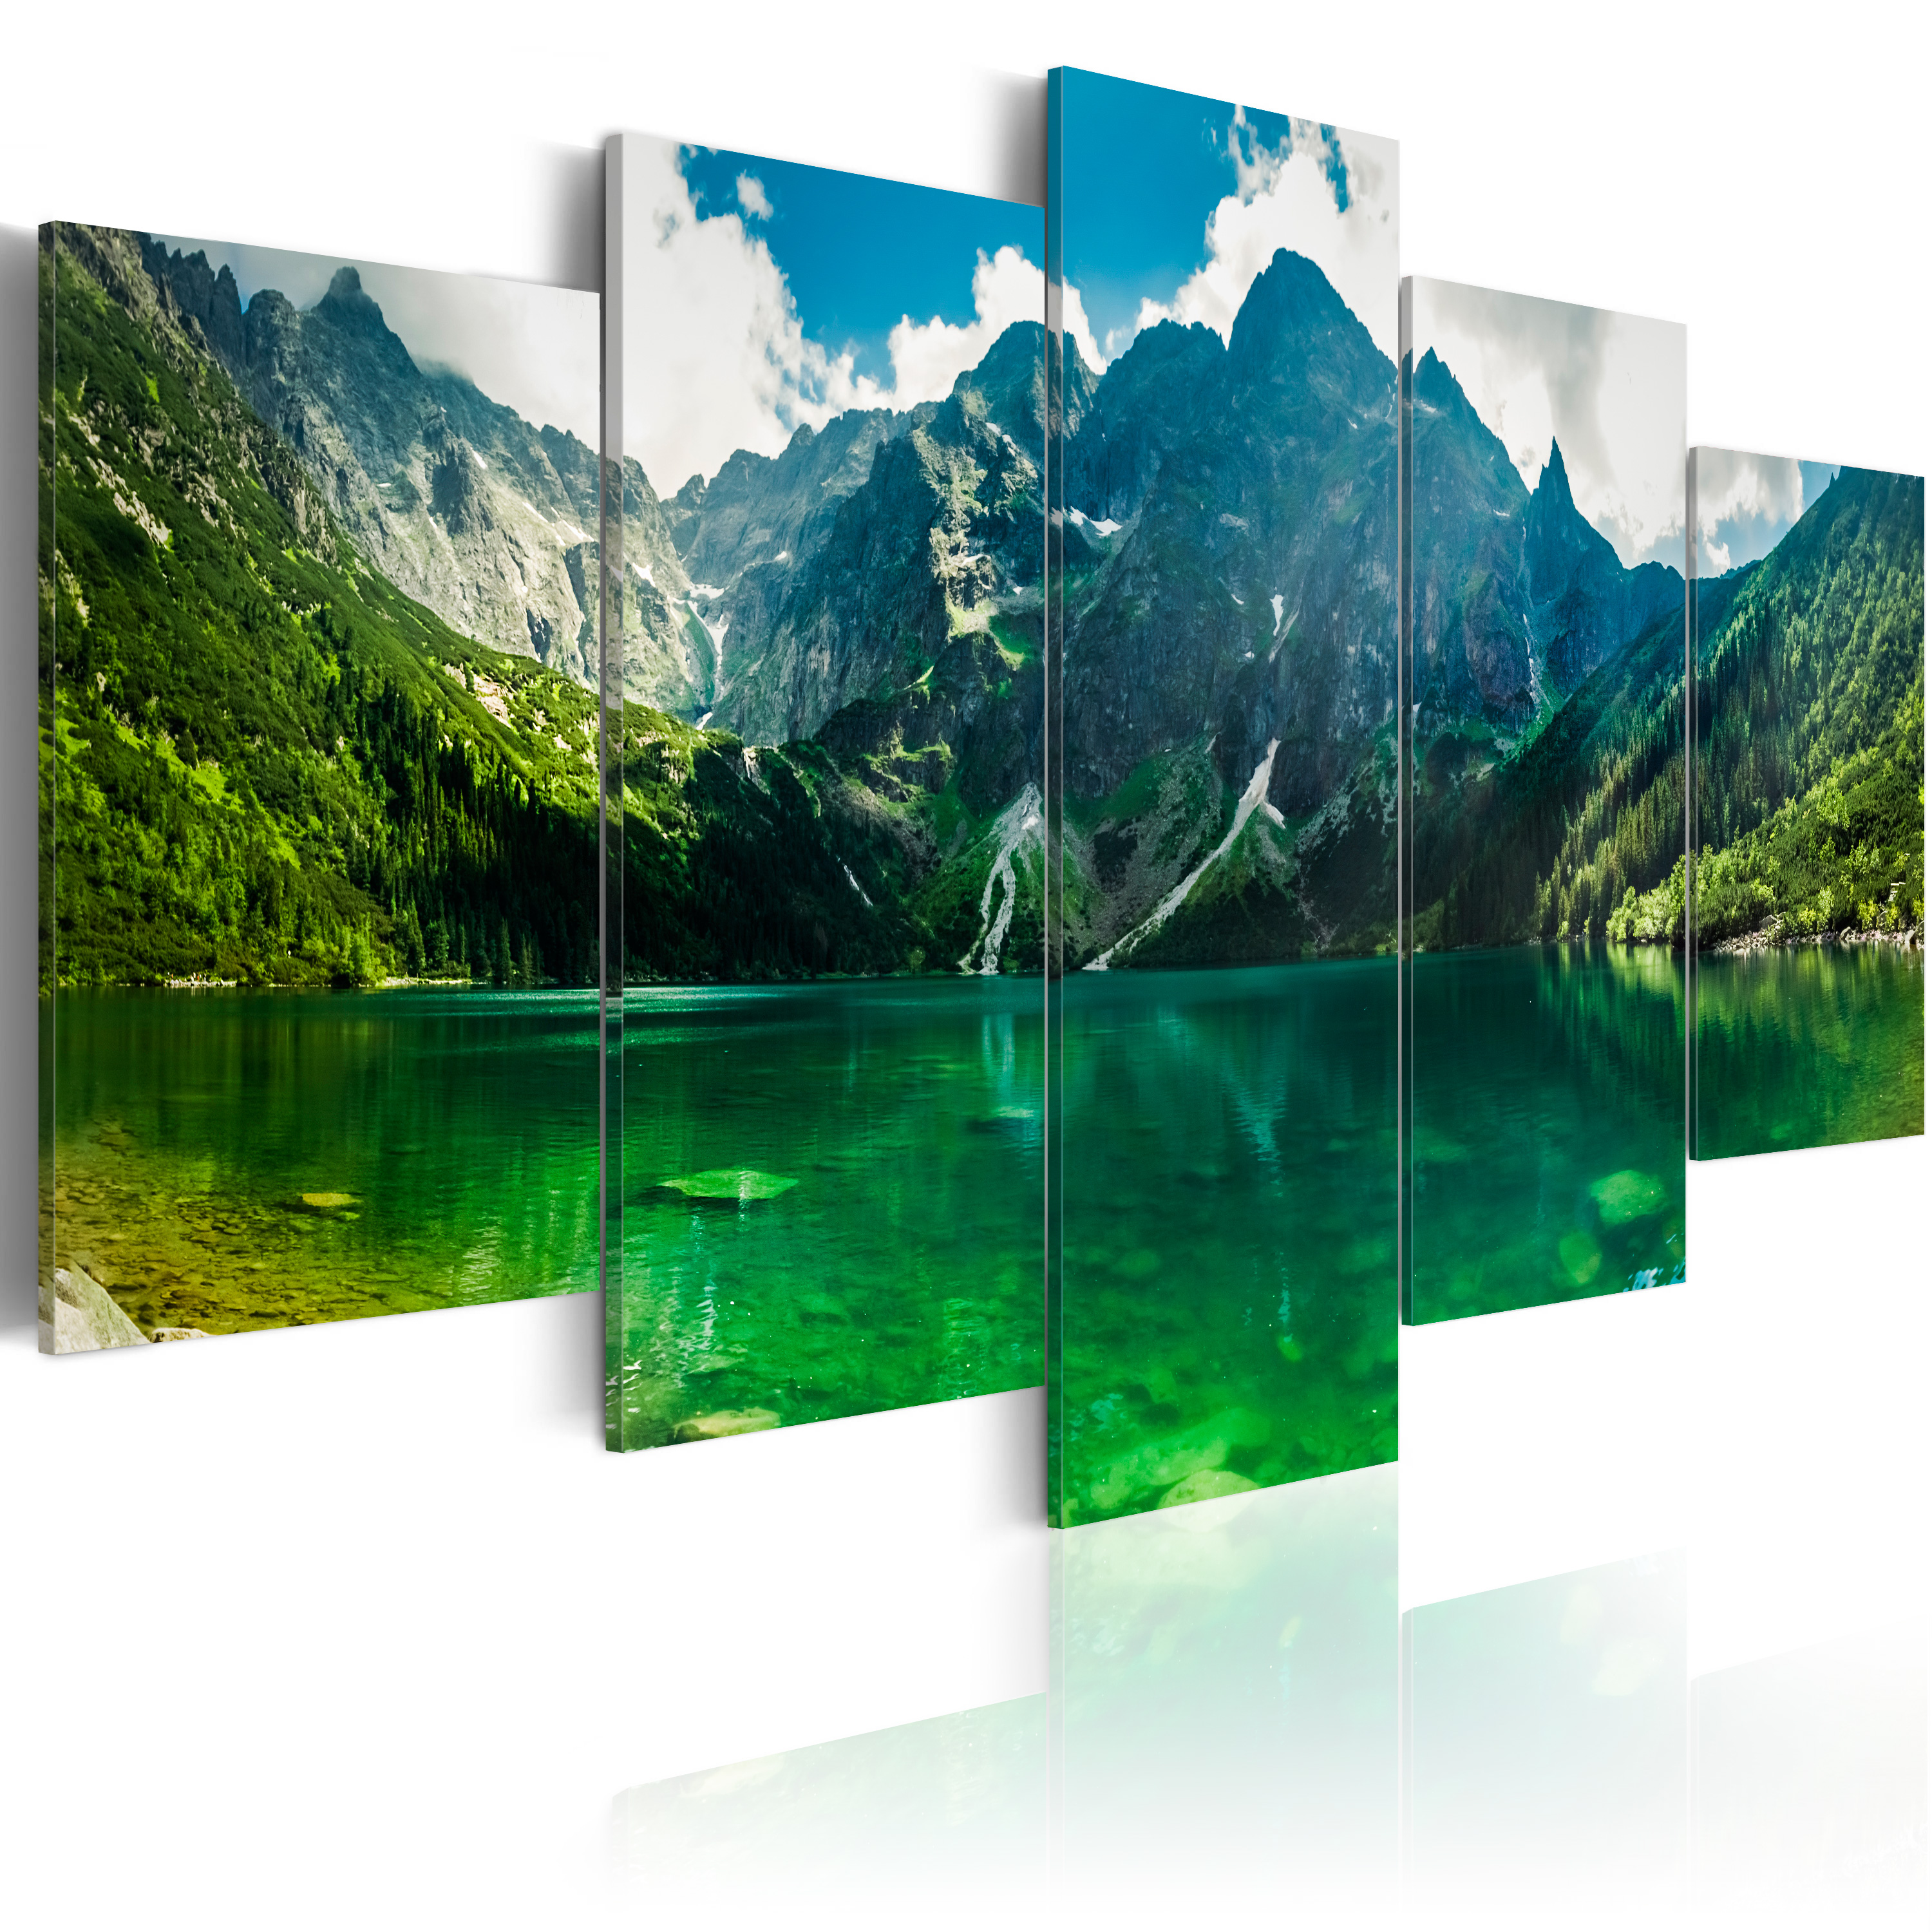 ARTGEIST Tranquility in the mountains - Billede af sø i bjergene trykt på lærred - Flere størrelser 100x50